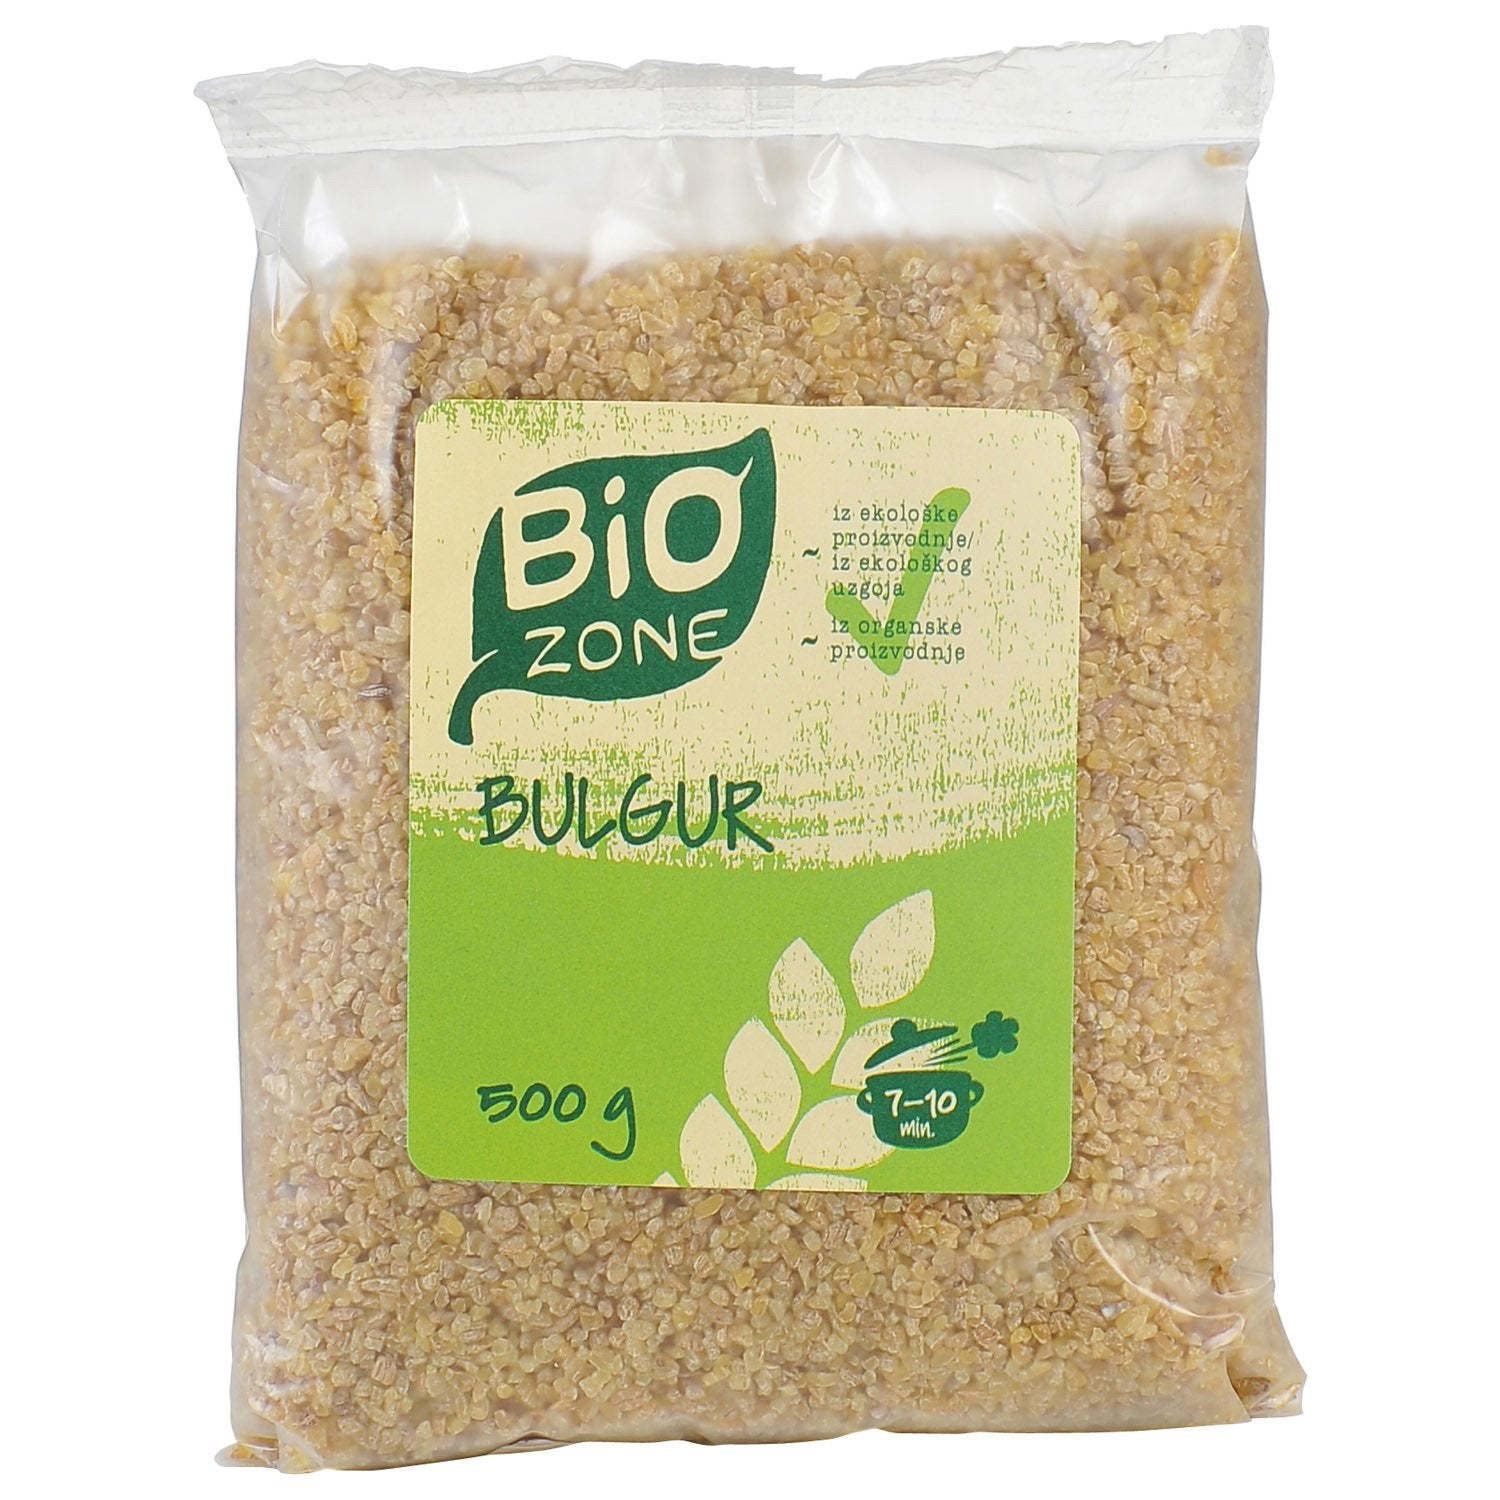 dub>Bulghur 500g Bio Zone